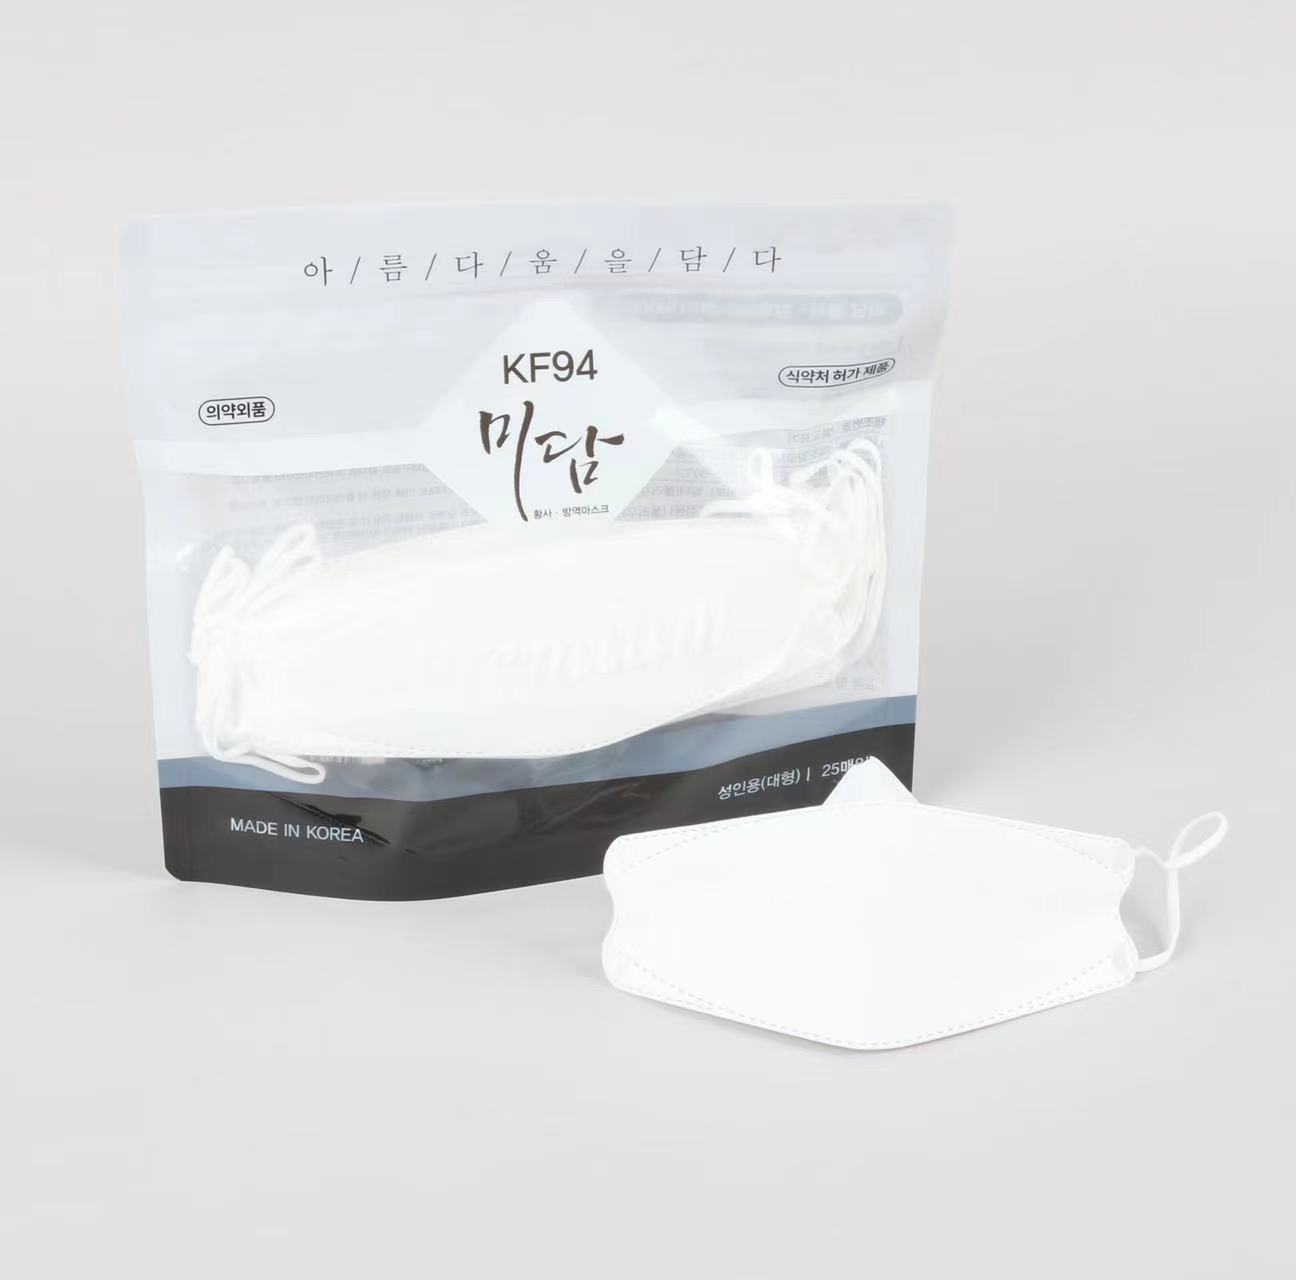 商品Meedam|【一般贸易正规进口】【国内发货】高品质 舒适透气 KF94防疫口罩 白色 FDA认证 韩国政府采购名单 3D设计4层过滤  密封袋装 高性价比 ,价格¥78,第1张图片